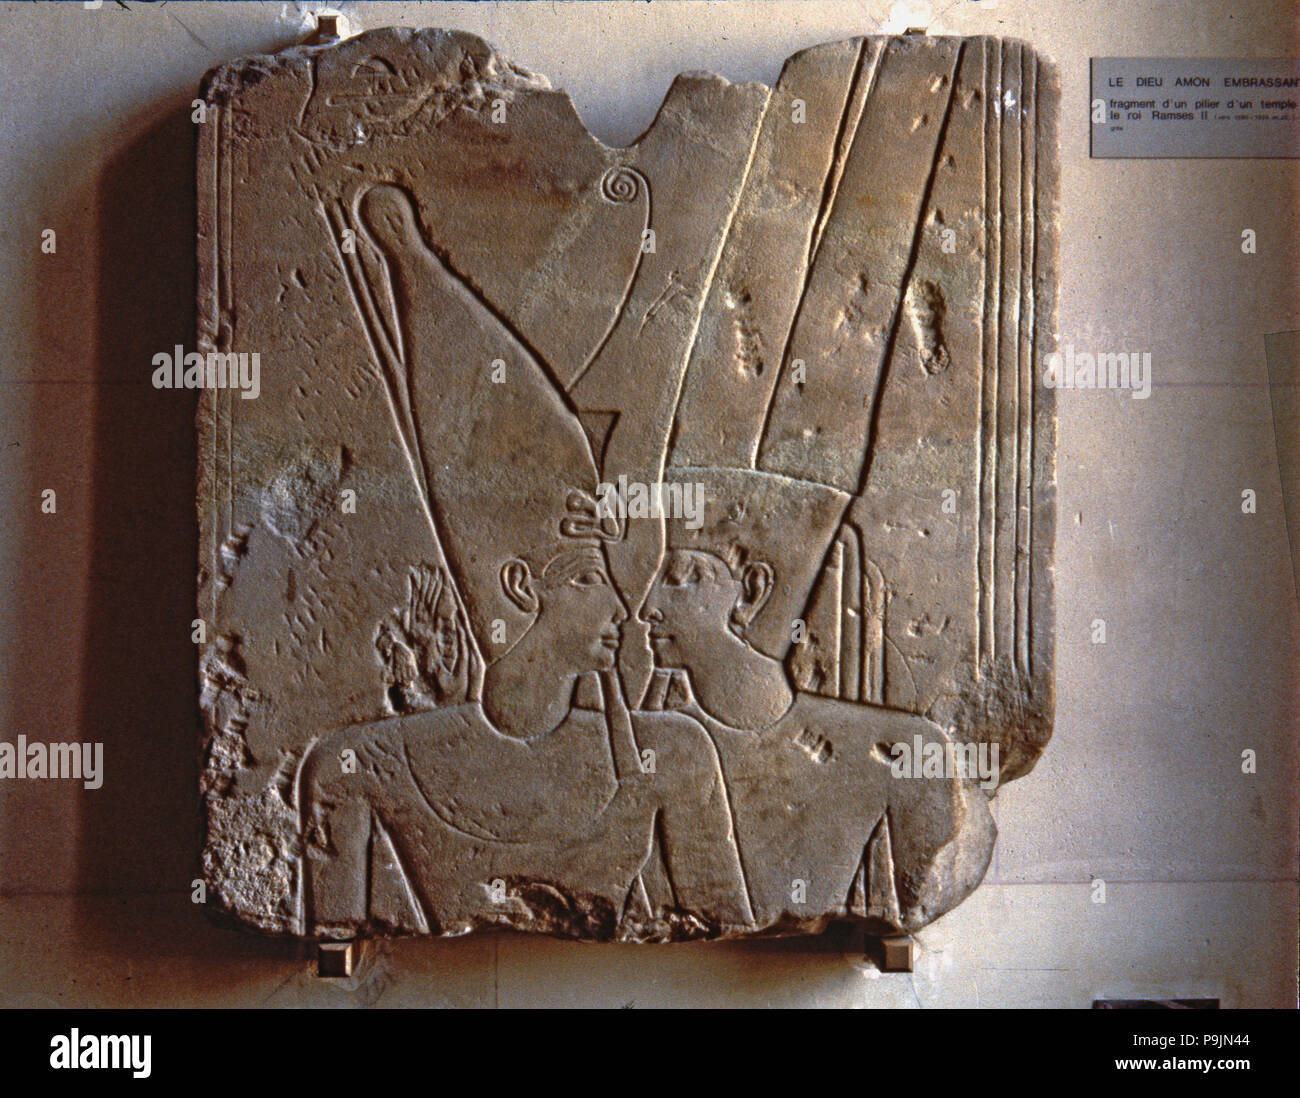 De secours le dieu Amon hugging Ramsès II, faite en grès, fragment de Karnak. Banque D'Images